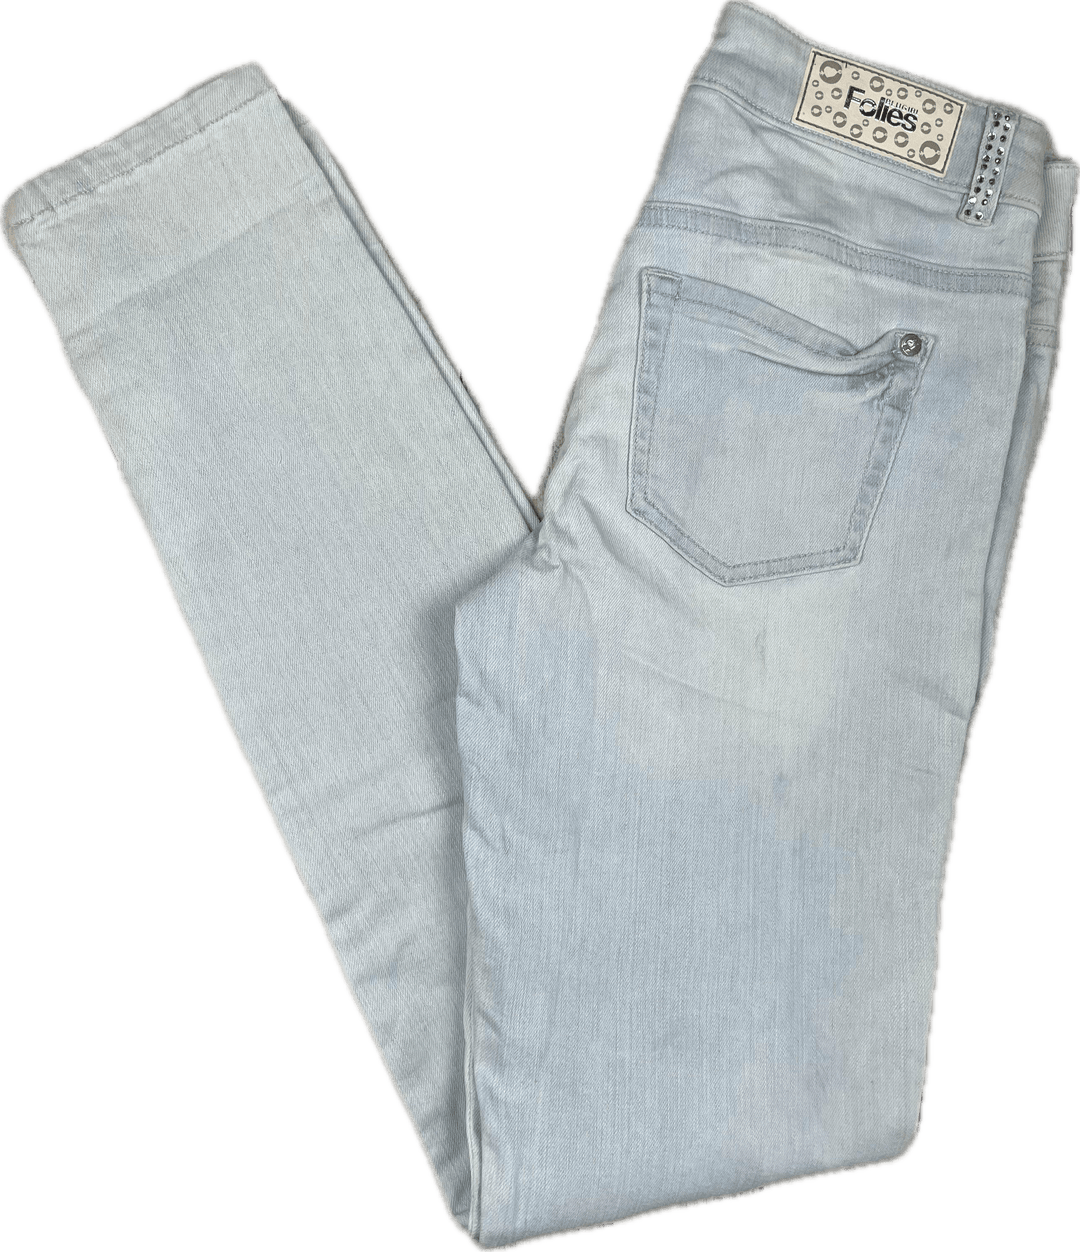 NWT -Blugirl Folies Jewelled Slim Fit Ripped Italian Jeans -Size 27 - Jean Pool